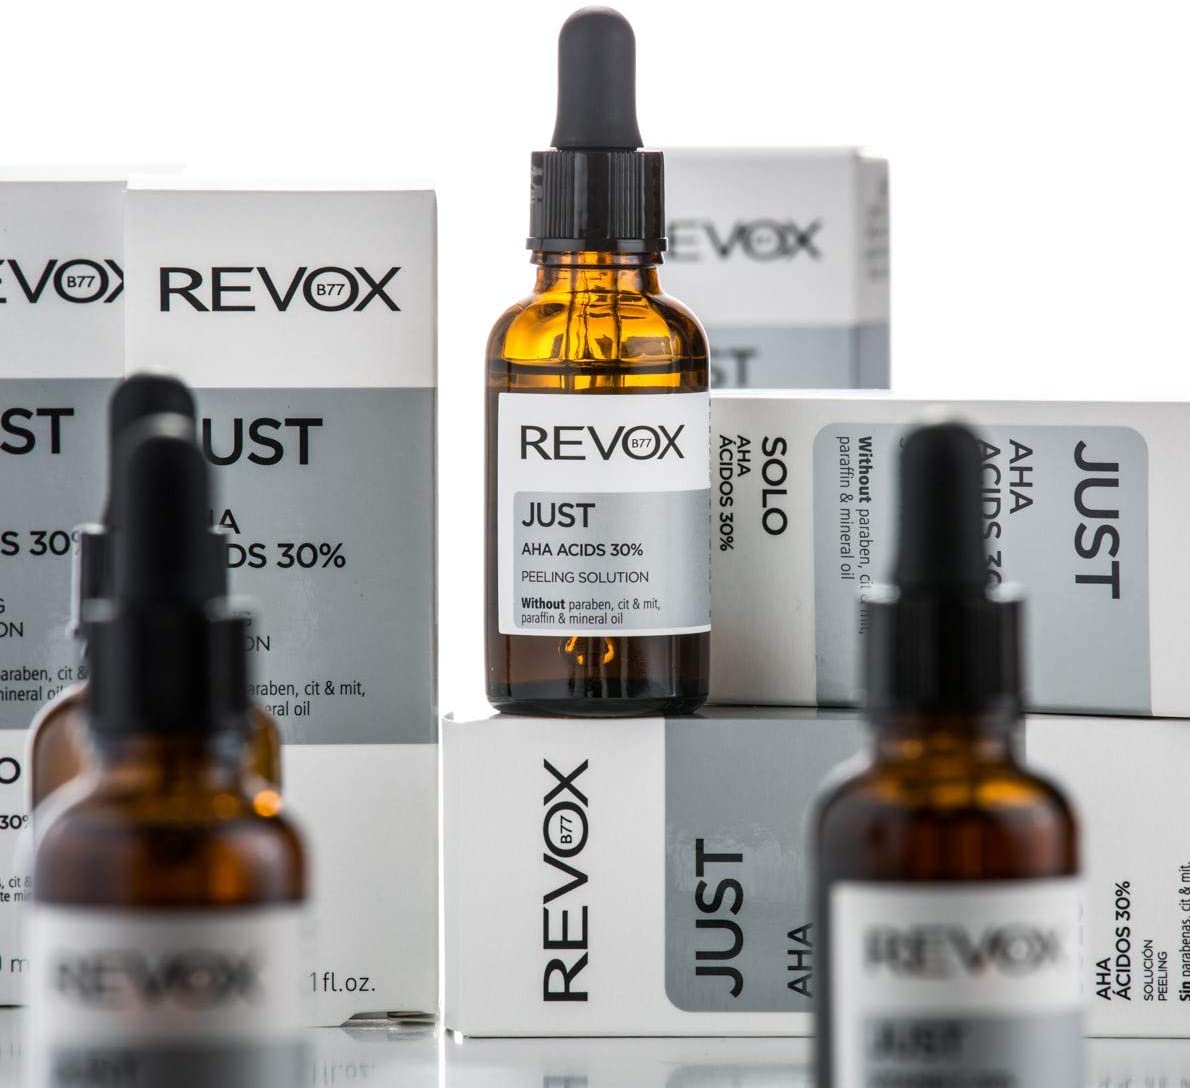 JUST Acide glycolique 20% – Revox B77